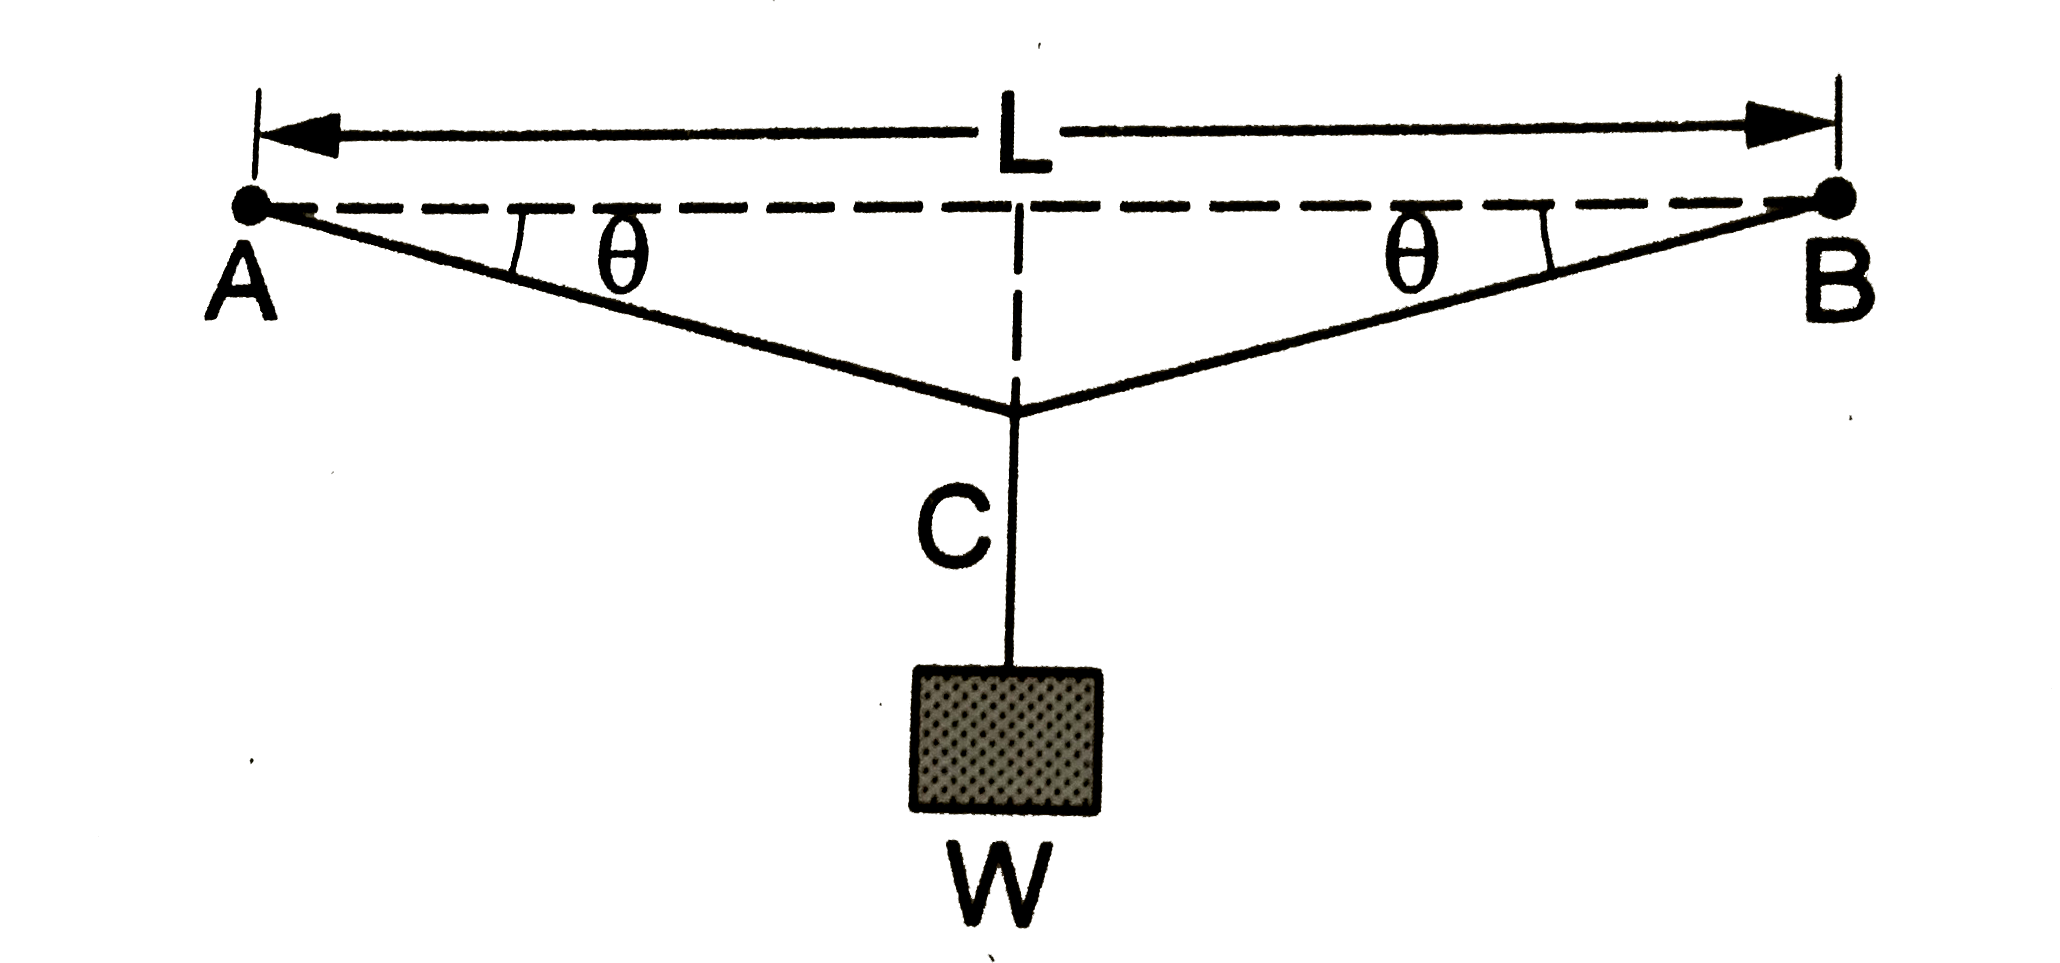 एक क्षैतिज तल में एक-दूसरे से L दूरी पर दो बिंदुओं A तथा B के बीच एक मोटा तार बँधा है। तार में कोई तनाव नहीं है। तार की अनुप्रस्थ काट का क्षेत्रफल A है तथा उसके पदार्थ का यंग मॉड्युलस Y है। इस तार के मध्यबिंदु C से W भार की एक वस्तु लटकाई गई है, जिससे वह बिंदु कुछ नीचे आ जाता है। संतुलन की अवस्था में तार के दोनों हिस्सों का AB के साथ कोण theta निकालें।